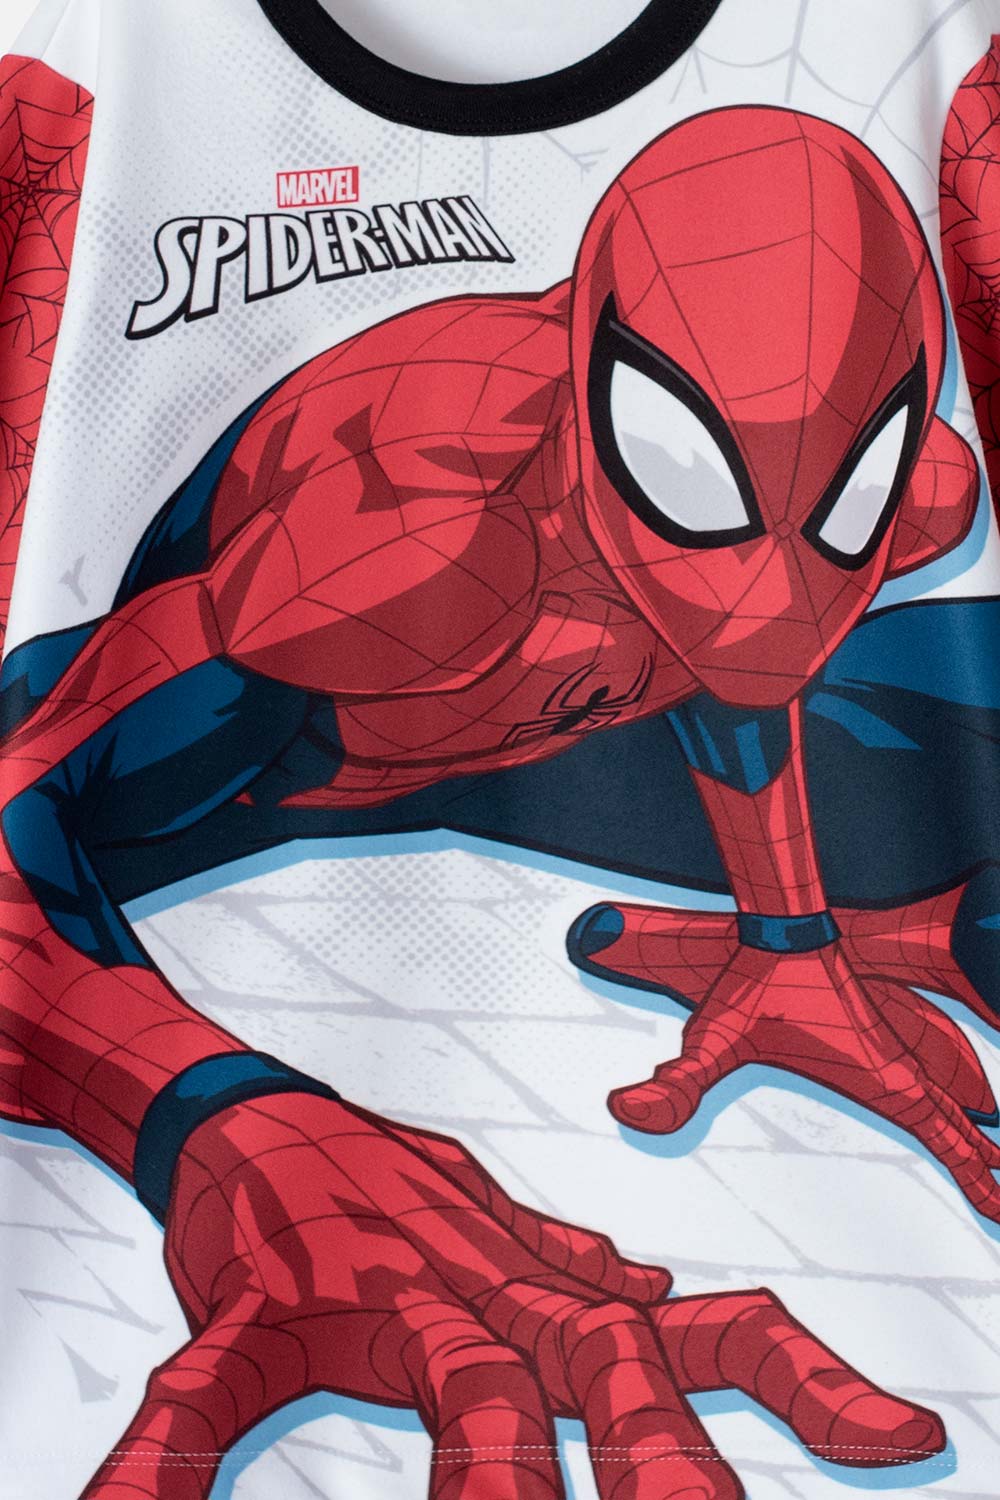 Pijama de Spider-Man roja de pantalón largo para niño - Tienda